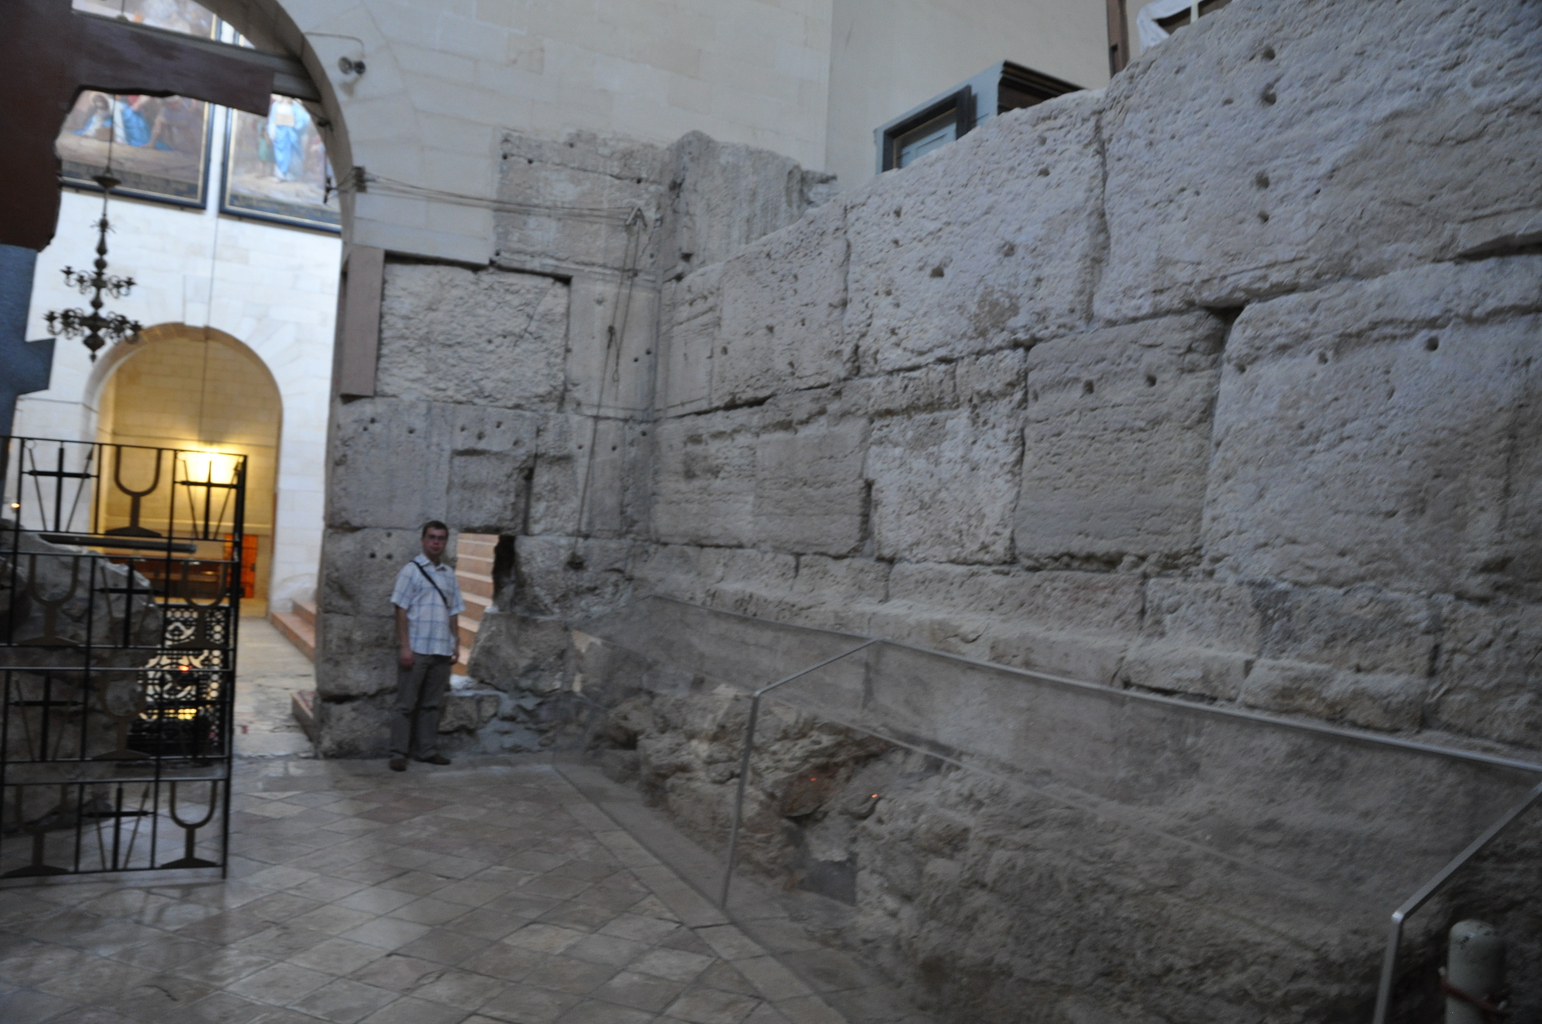 Вид с севера на пересечение стен; по фигуре археолога можно убедиться в значительном размере камней в кладке северо-южной стены.